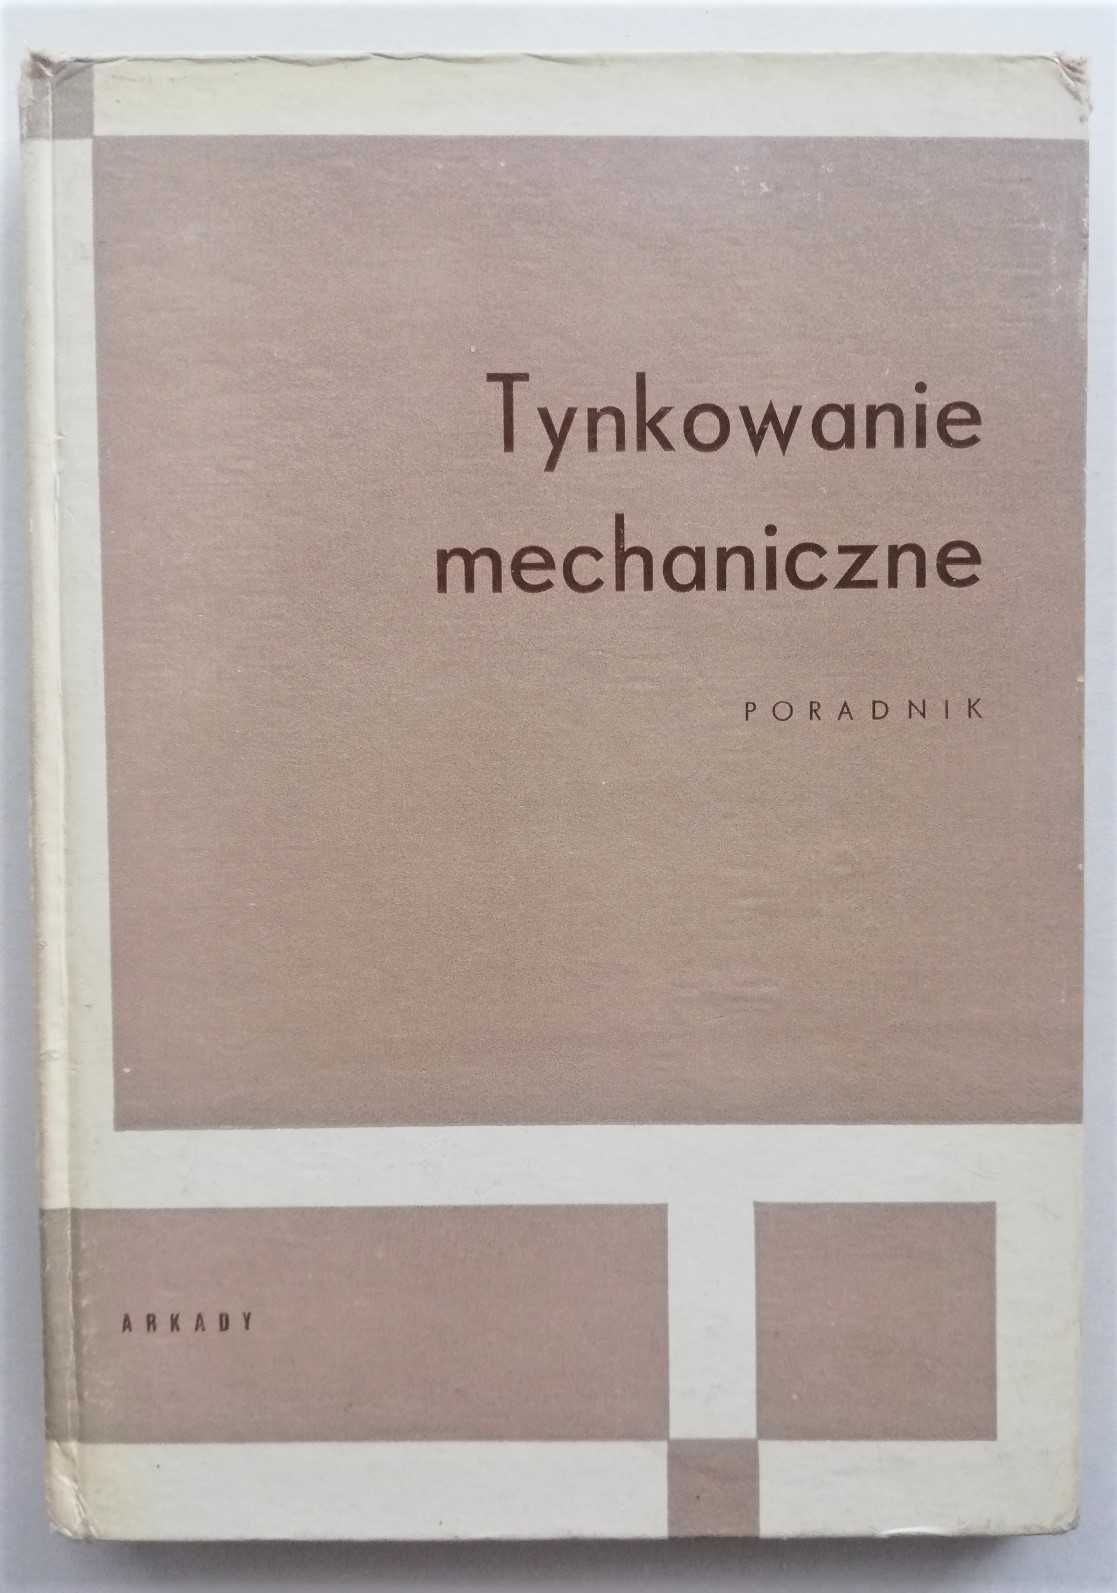 „Tynkowanie mechaniczne. Poradnik” B. Gałka praca zbiorowa 1969 r.